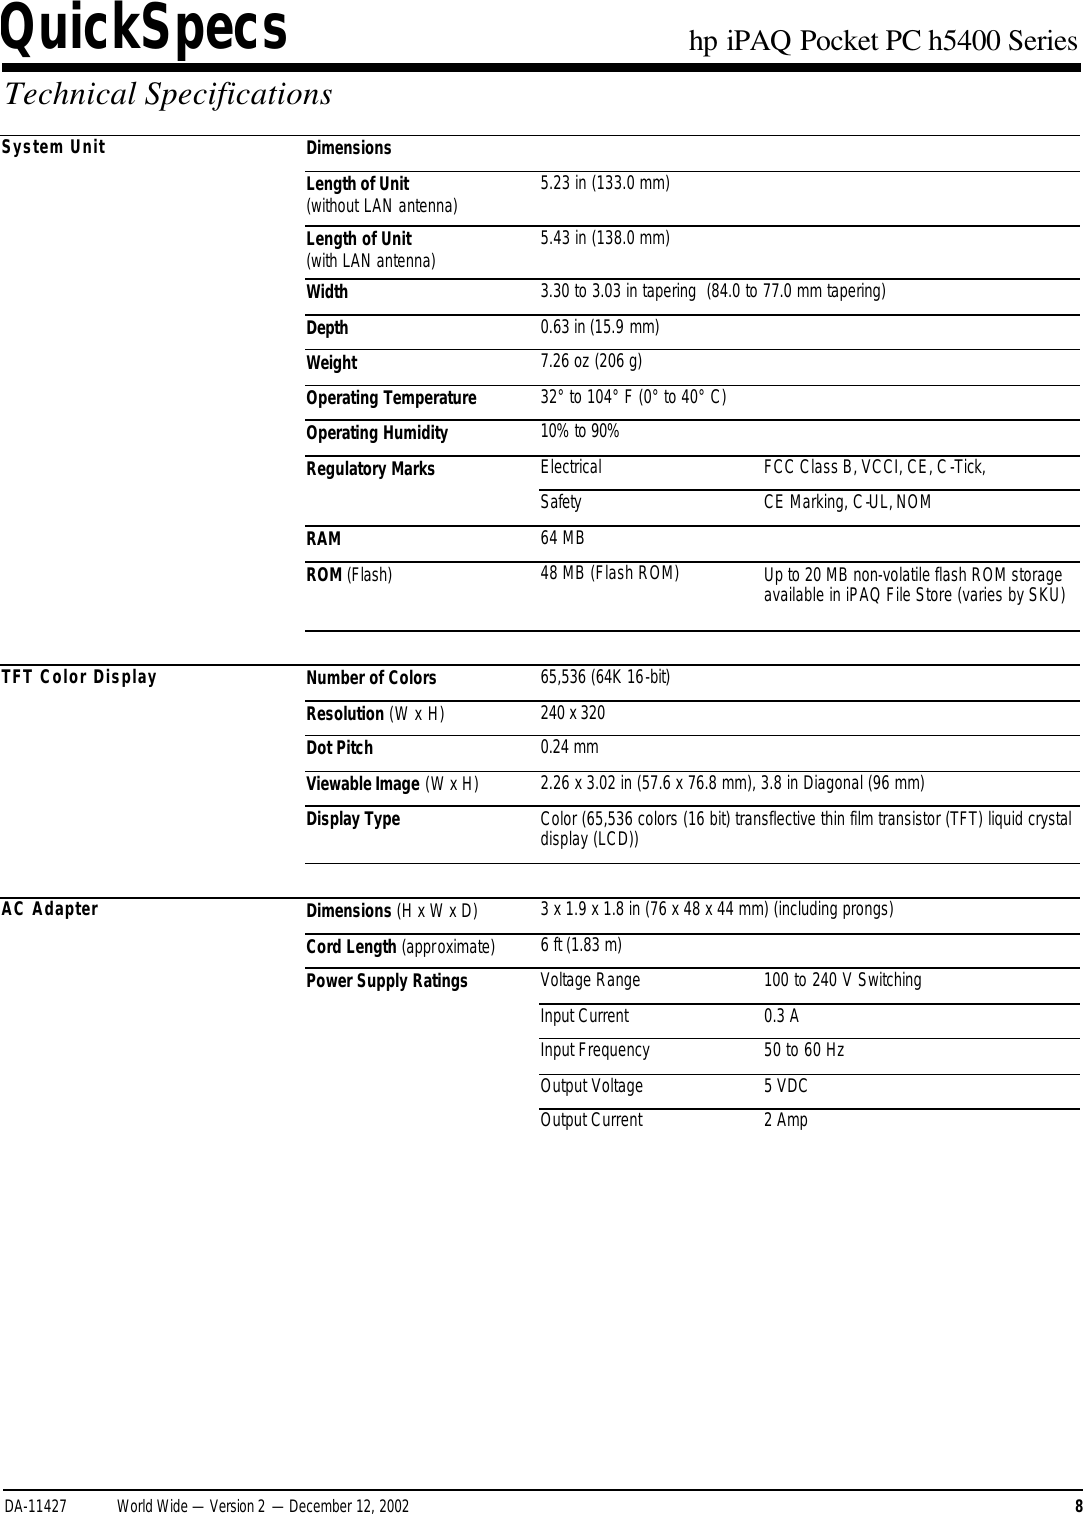 Page 8 of 11 - HP IPAQ Pocket PC H5400 Series - QuickSpecs Overview I PAQ Quick Specs Lpia8003